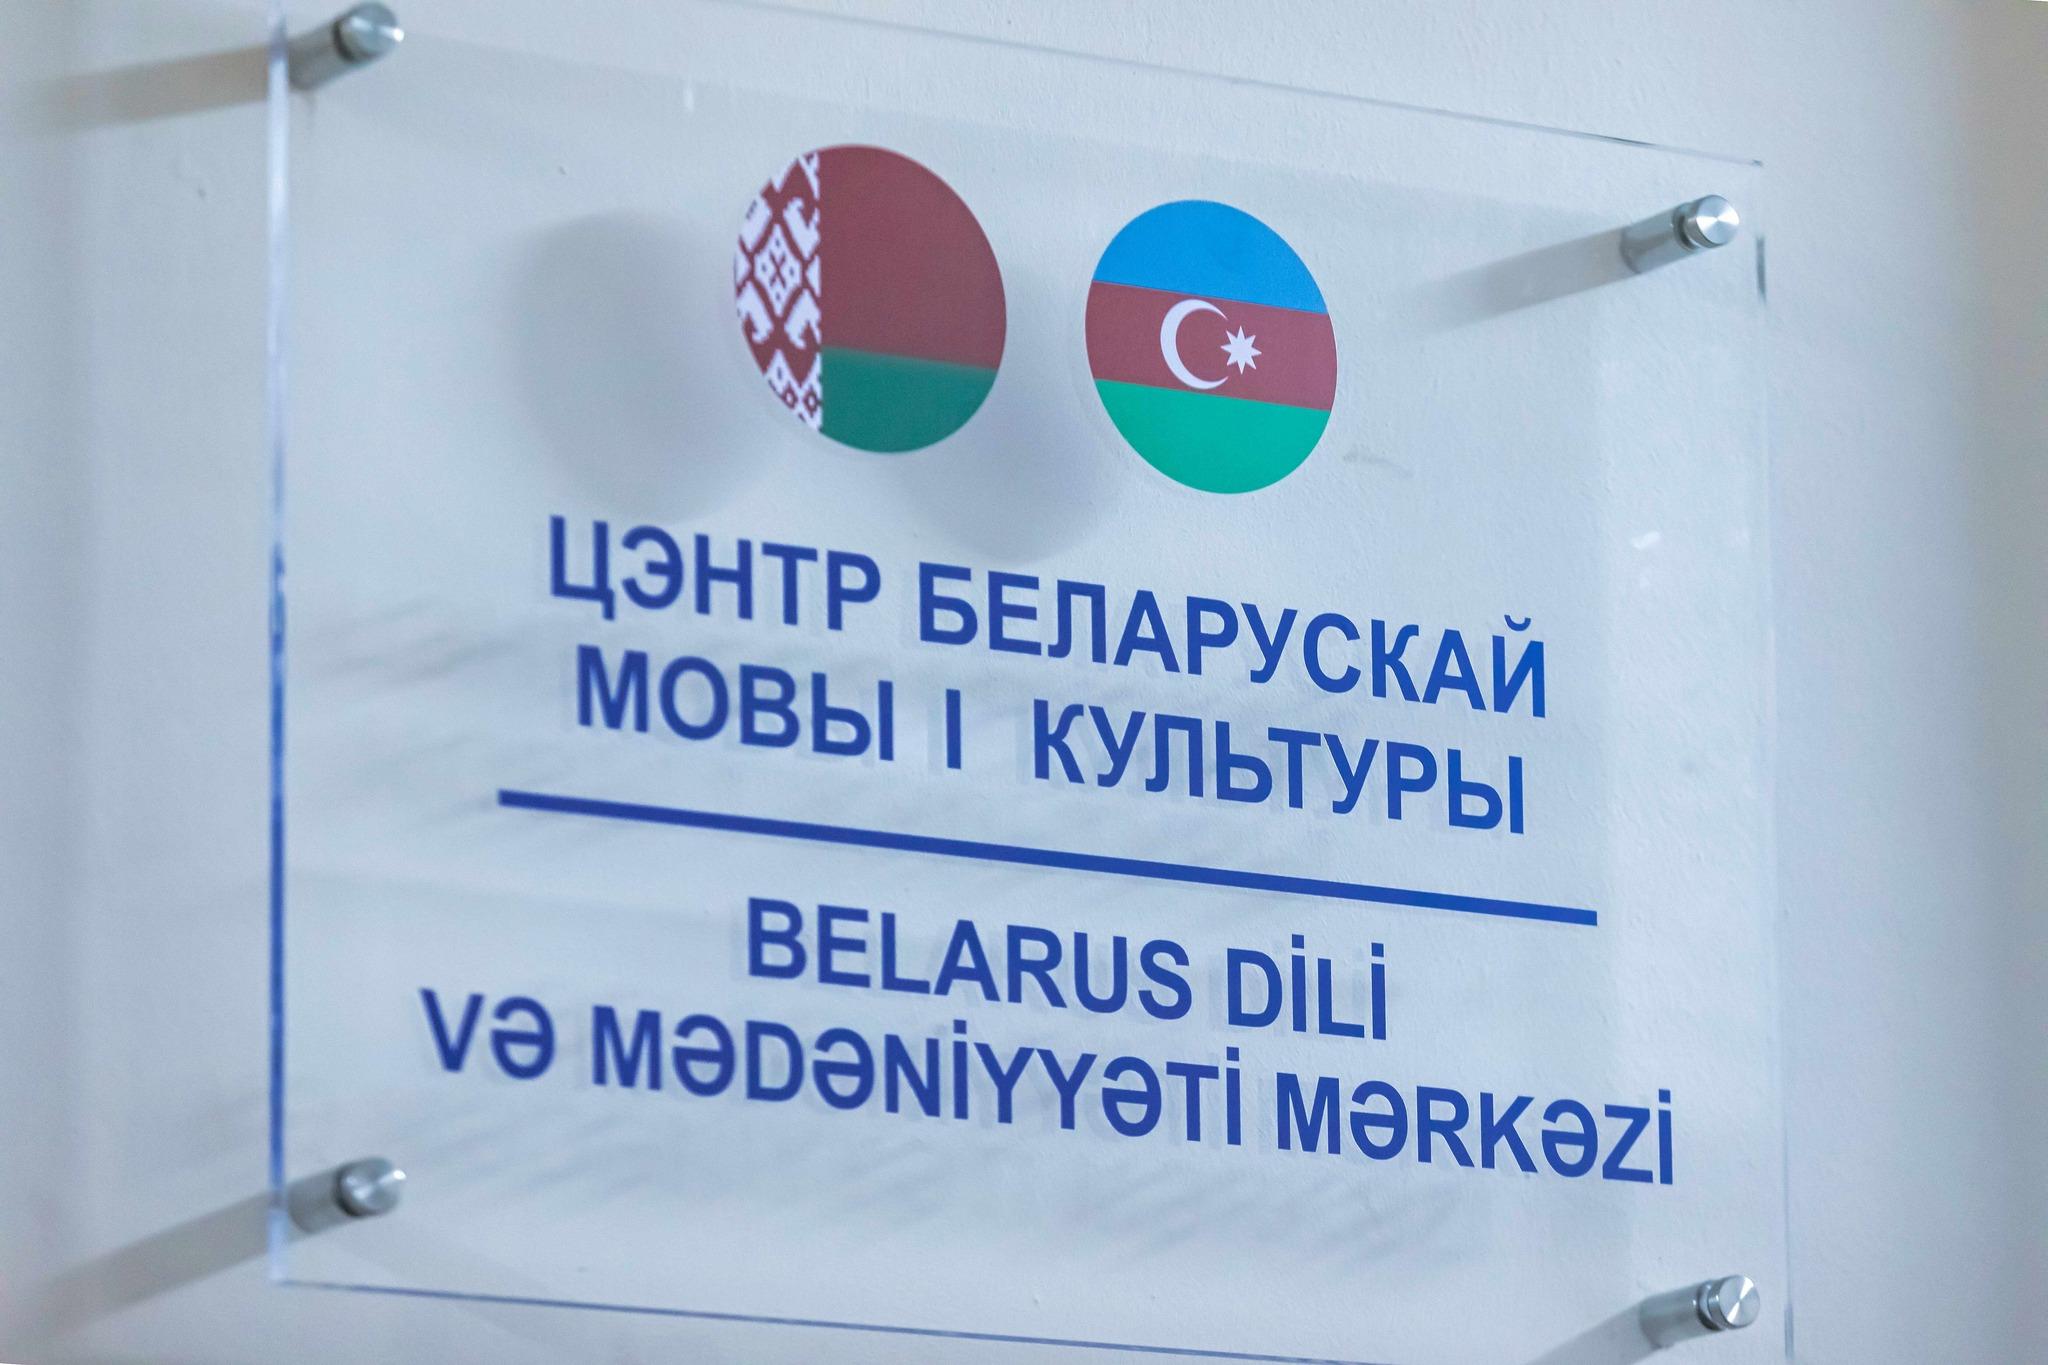 В Баку открылся Центр белорусского языка и культуры ФОТО